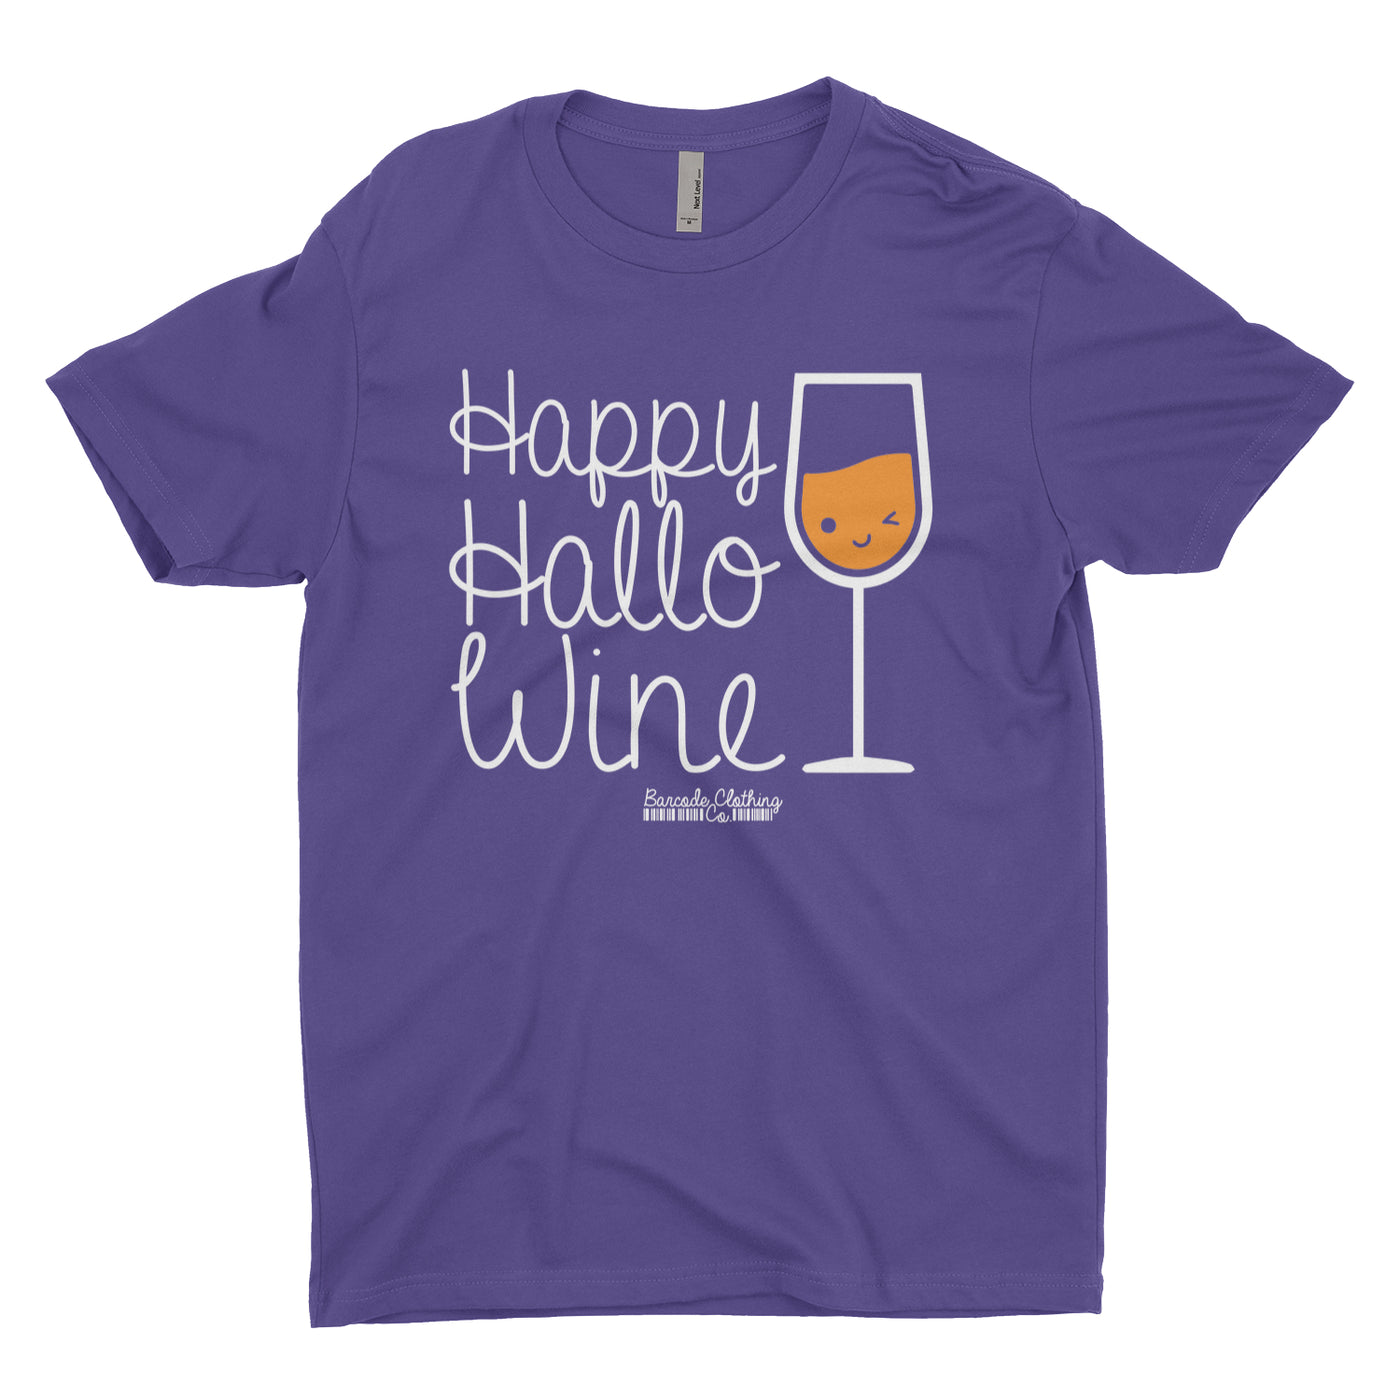 Happy Hallo-Wine